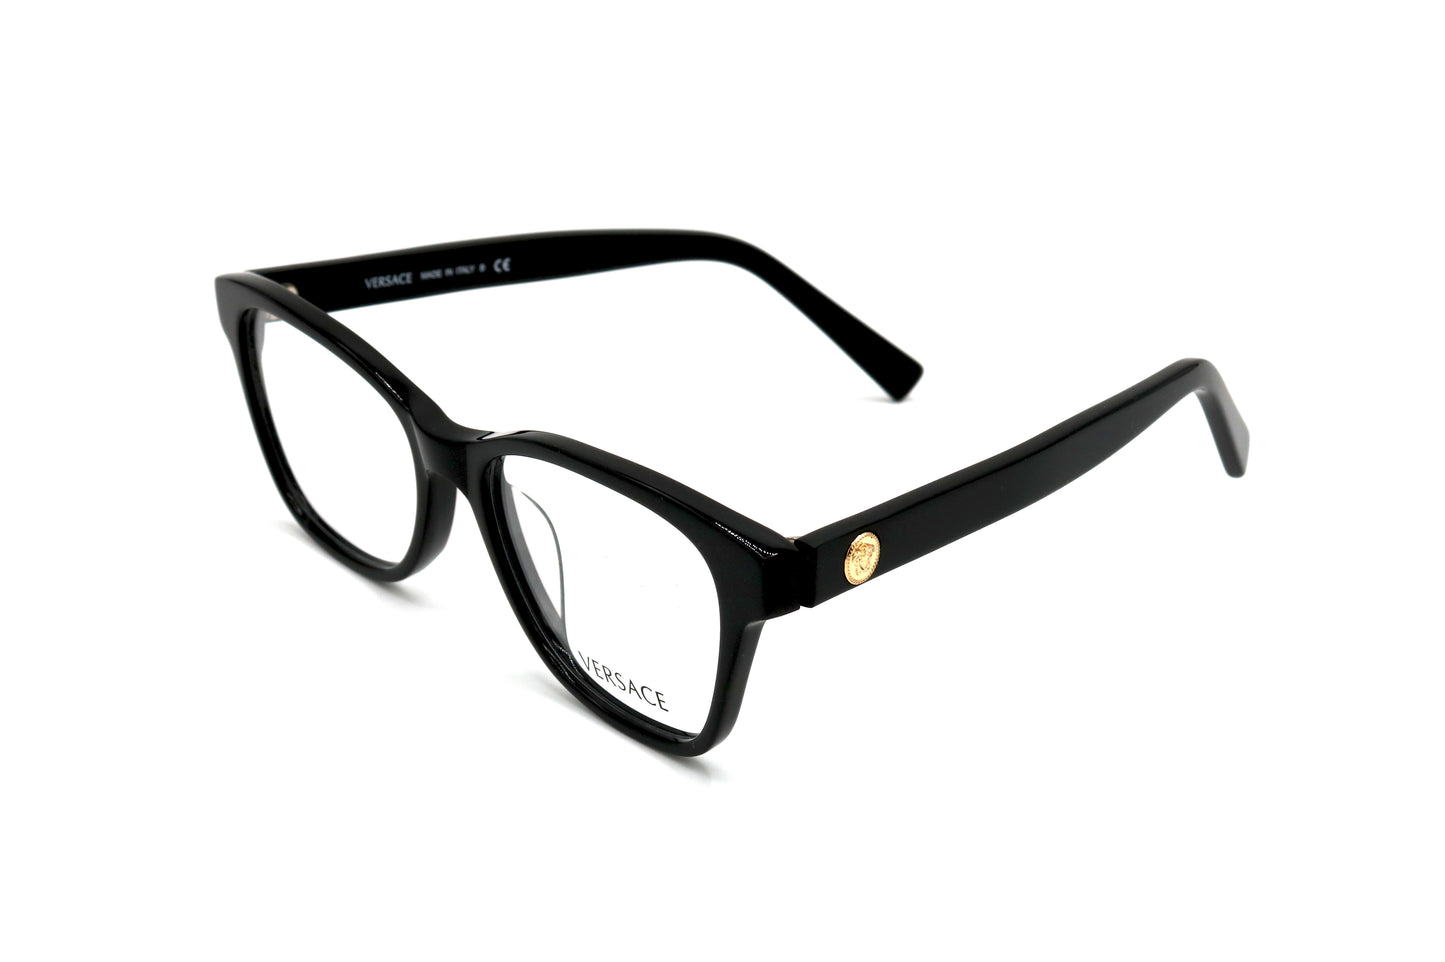 NS Luxury - 3265 - Black - Eyeglasses